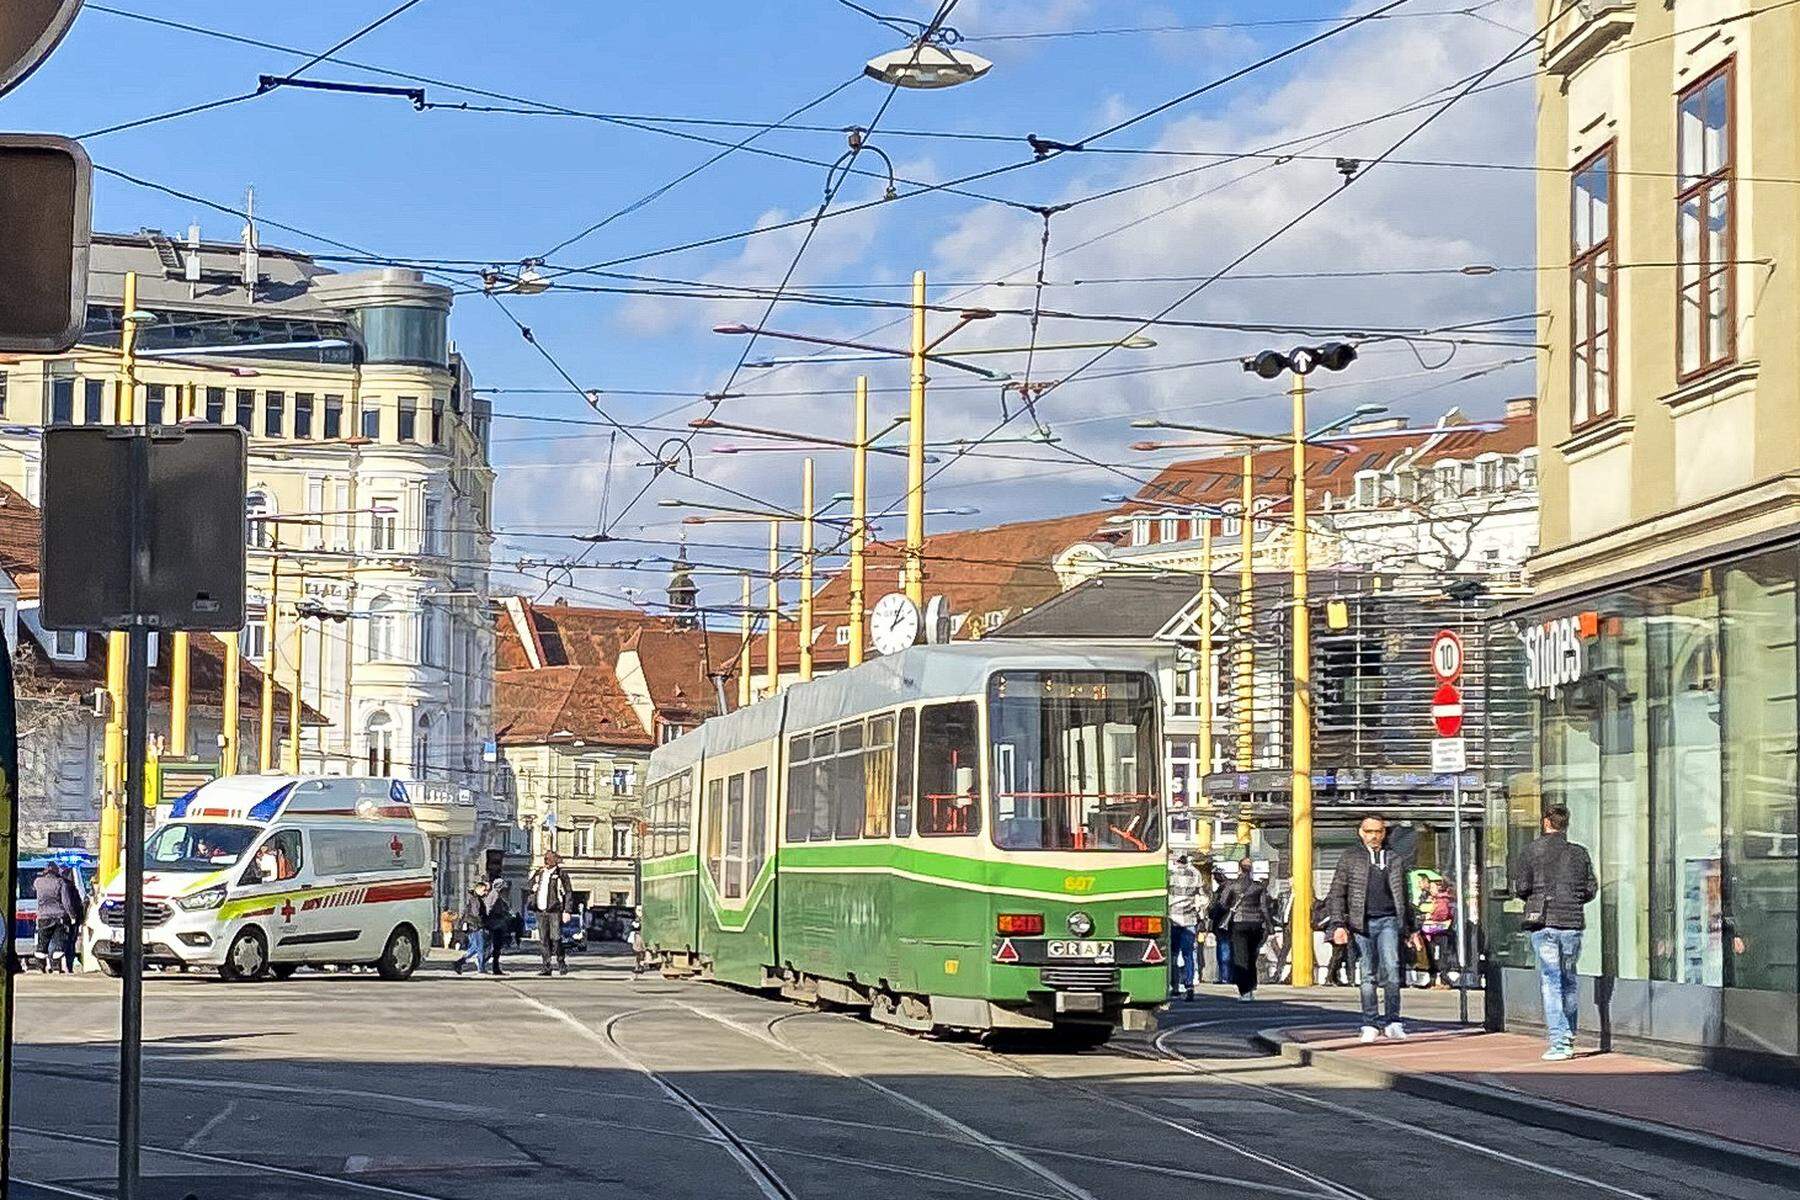 Schwer verletzt: 84-Jährige am Grazer Jakominiplatz von Straßenbahn erfasst